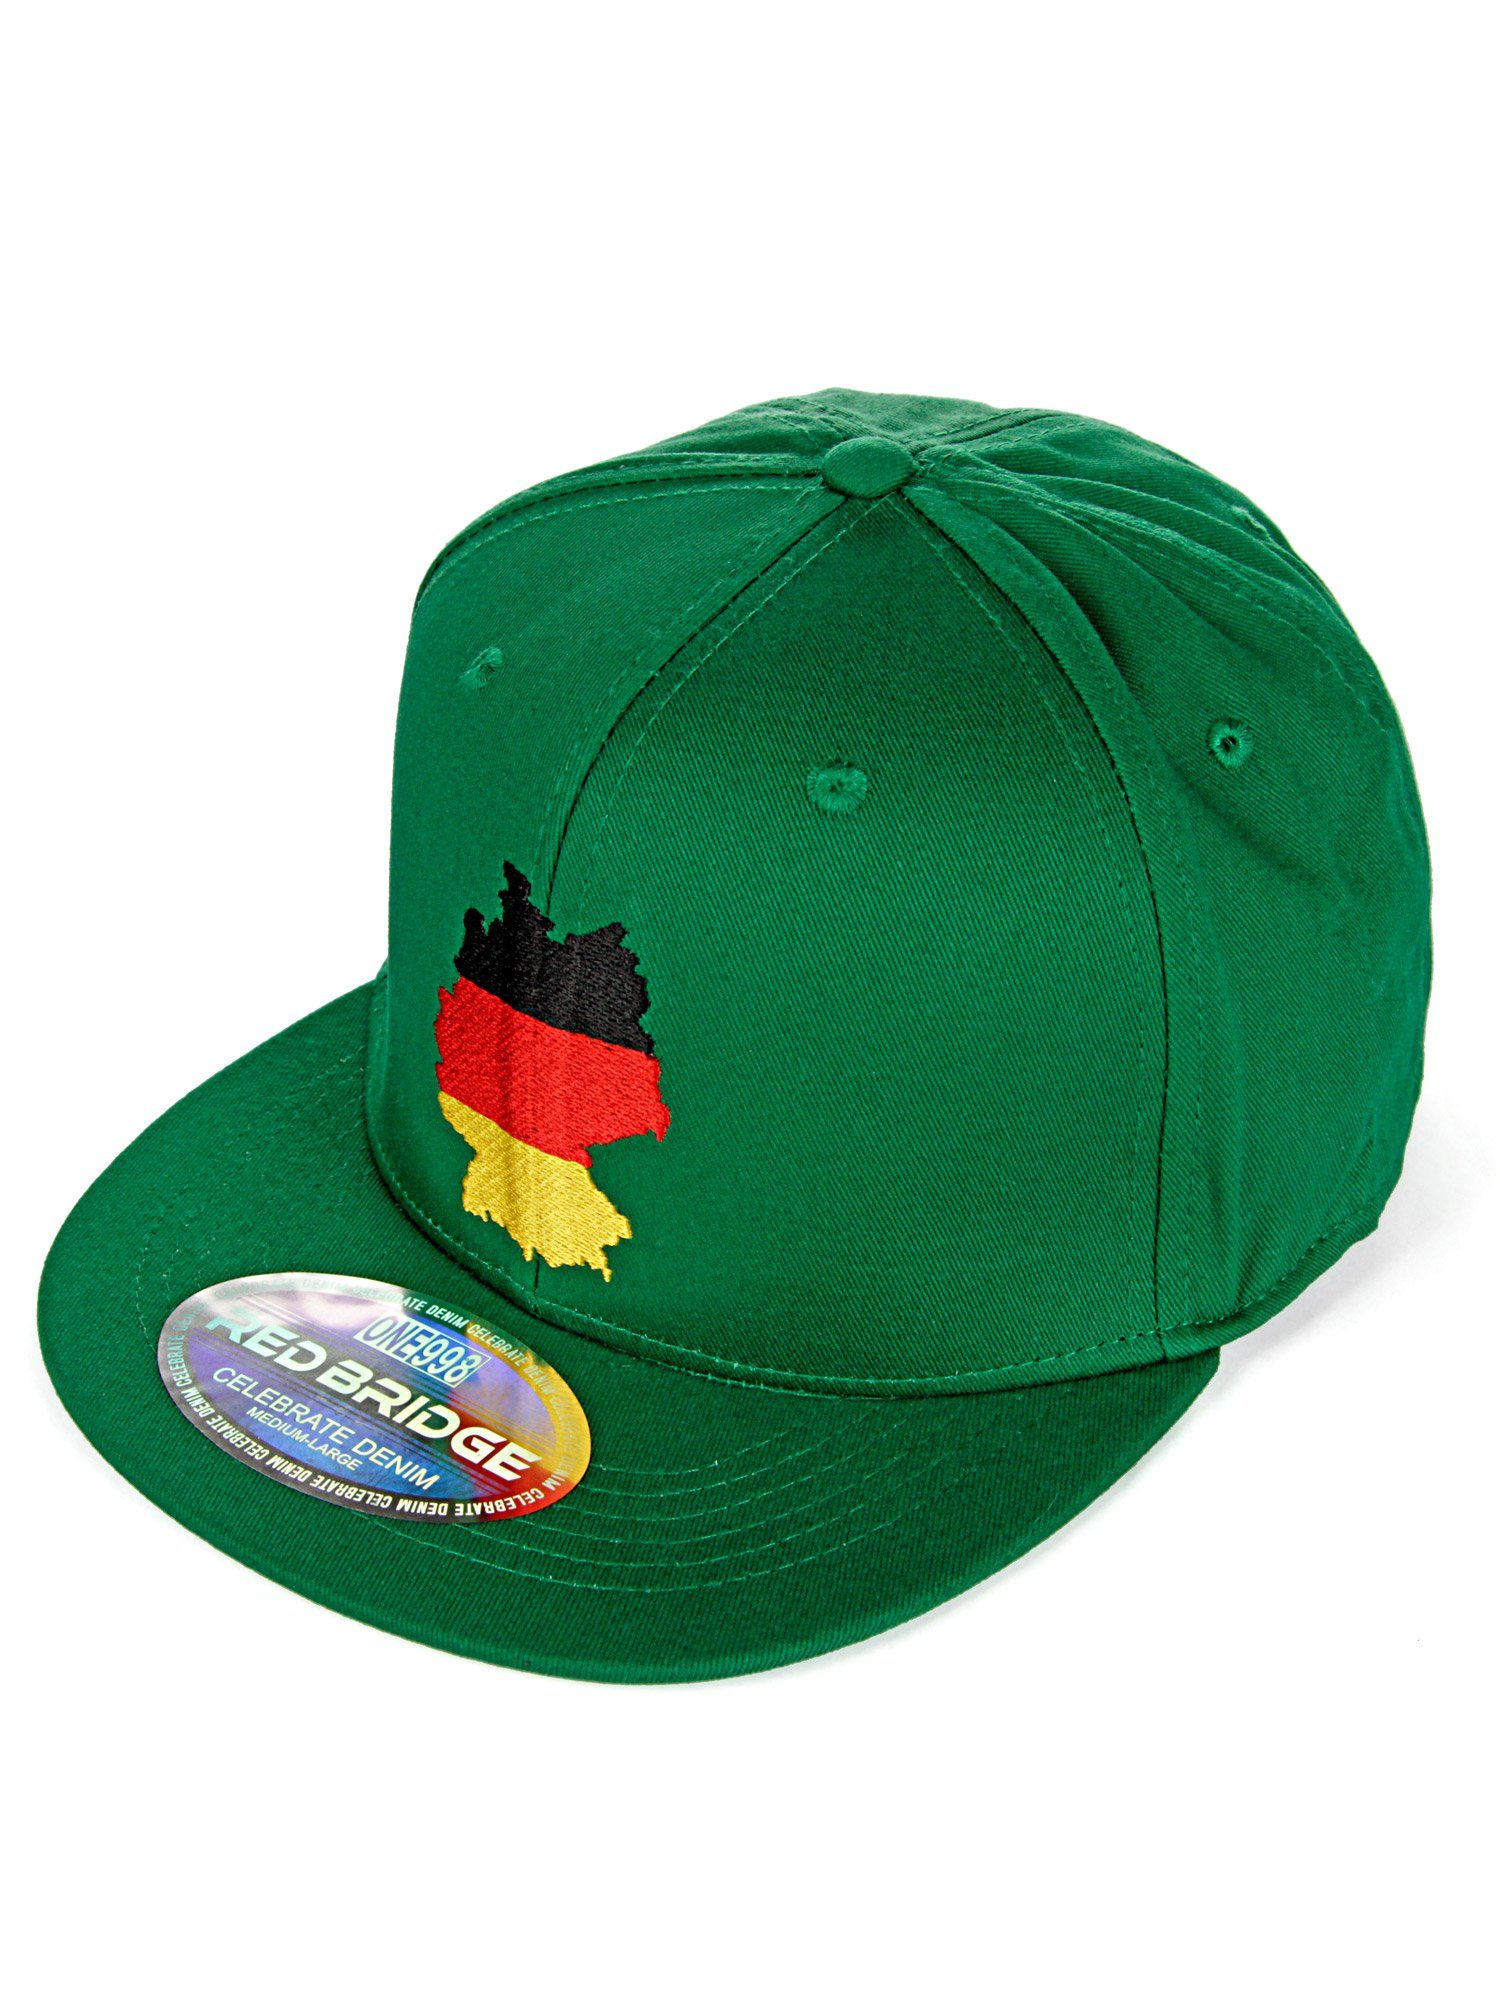 RedBridge Baseball Cap grün Shoreham trendiger Deutschland-Stickerei mit